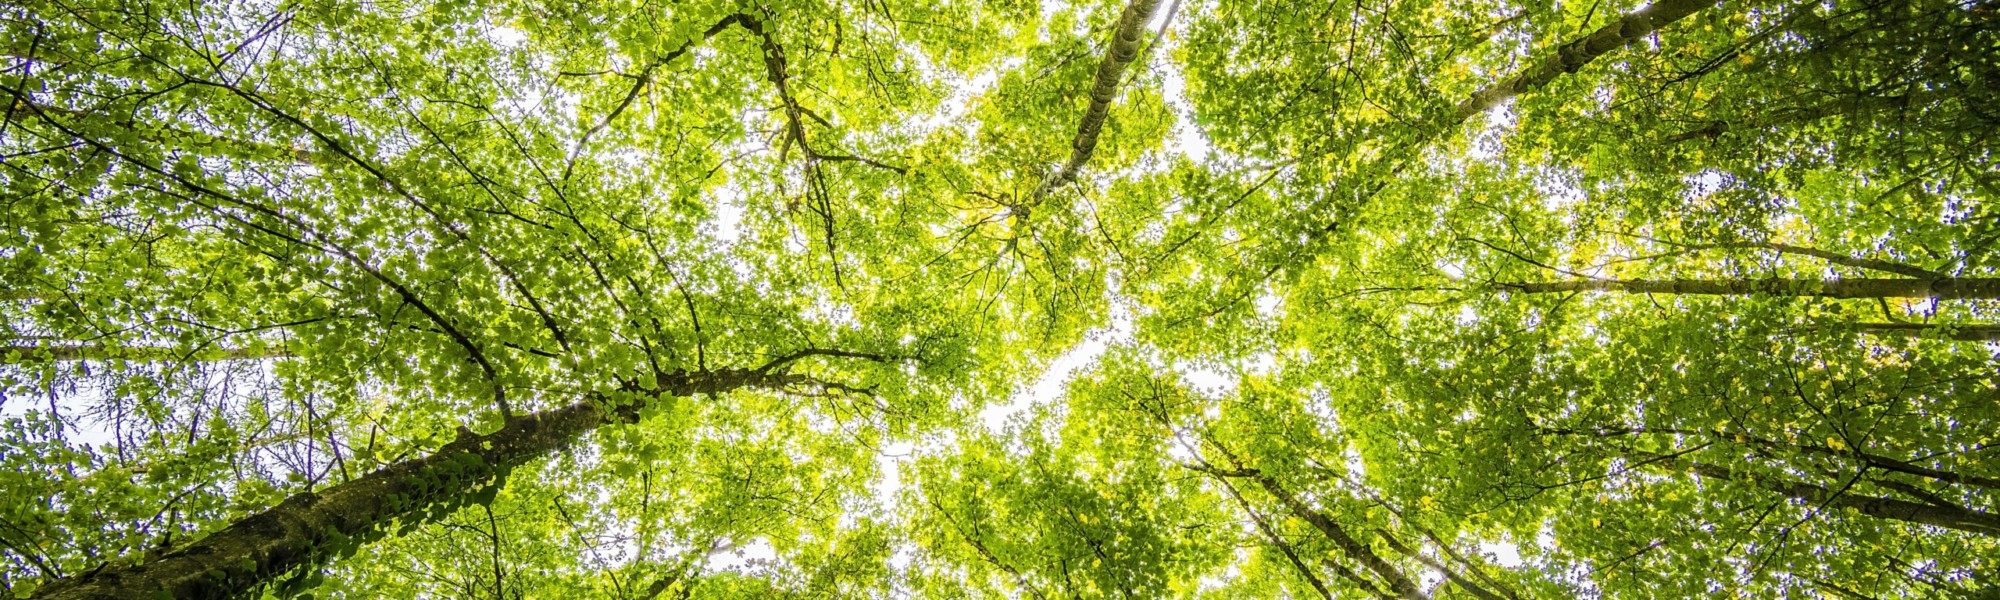 Kuvassa on alhaalta ylöspäin kuvattuna keväisen vihreänä hohtava puiden latvusto.